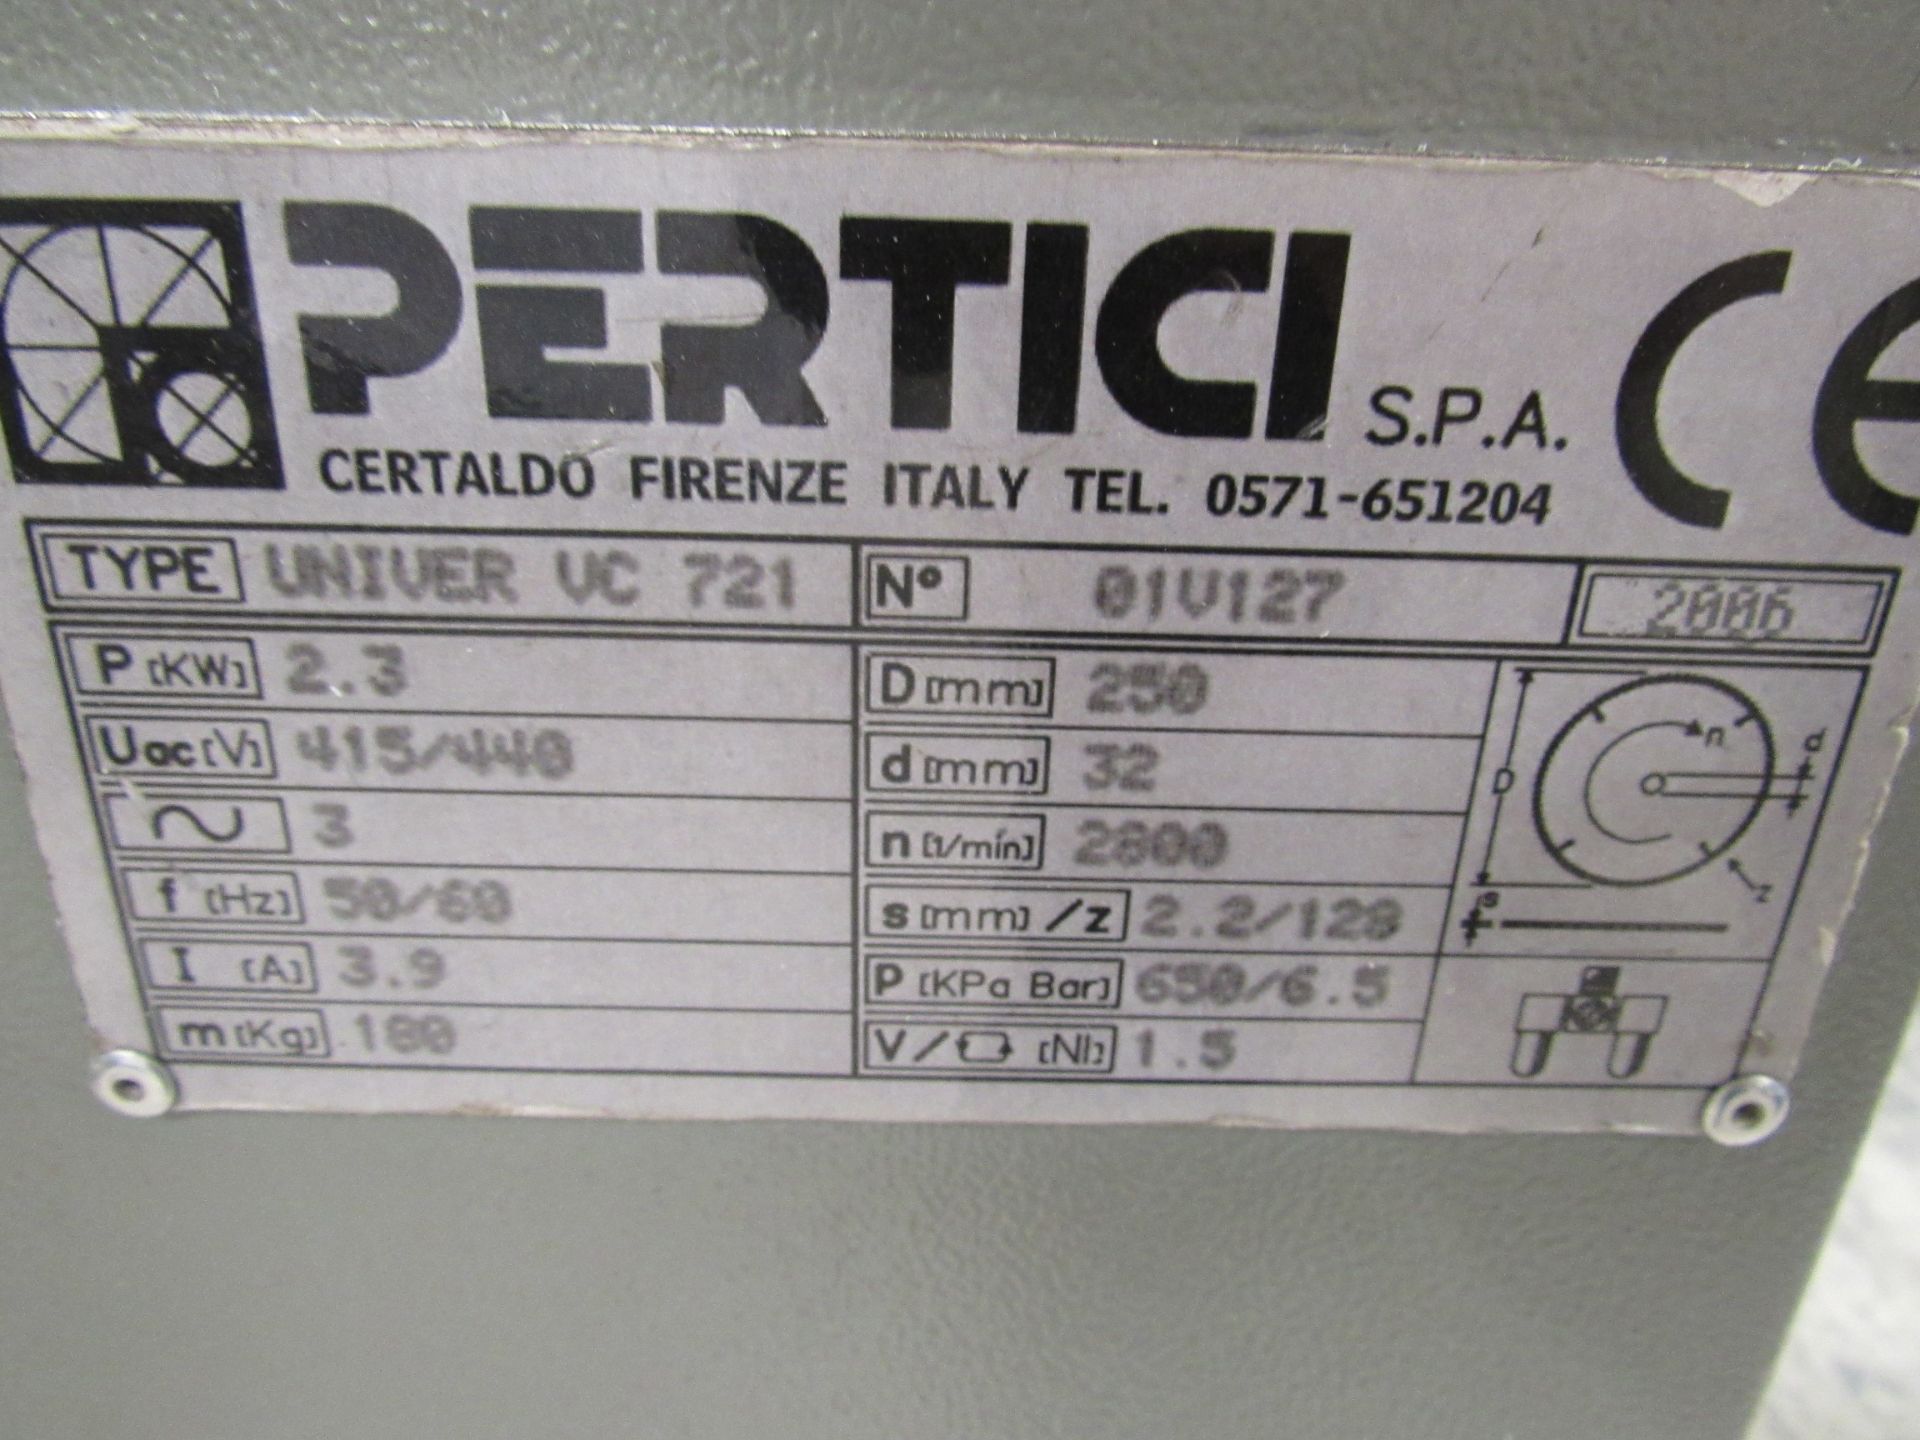 Pertici Univer VC721 notcher, Serial number 01V127 - Image 4 of 4